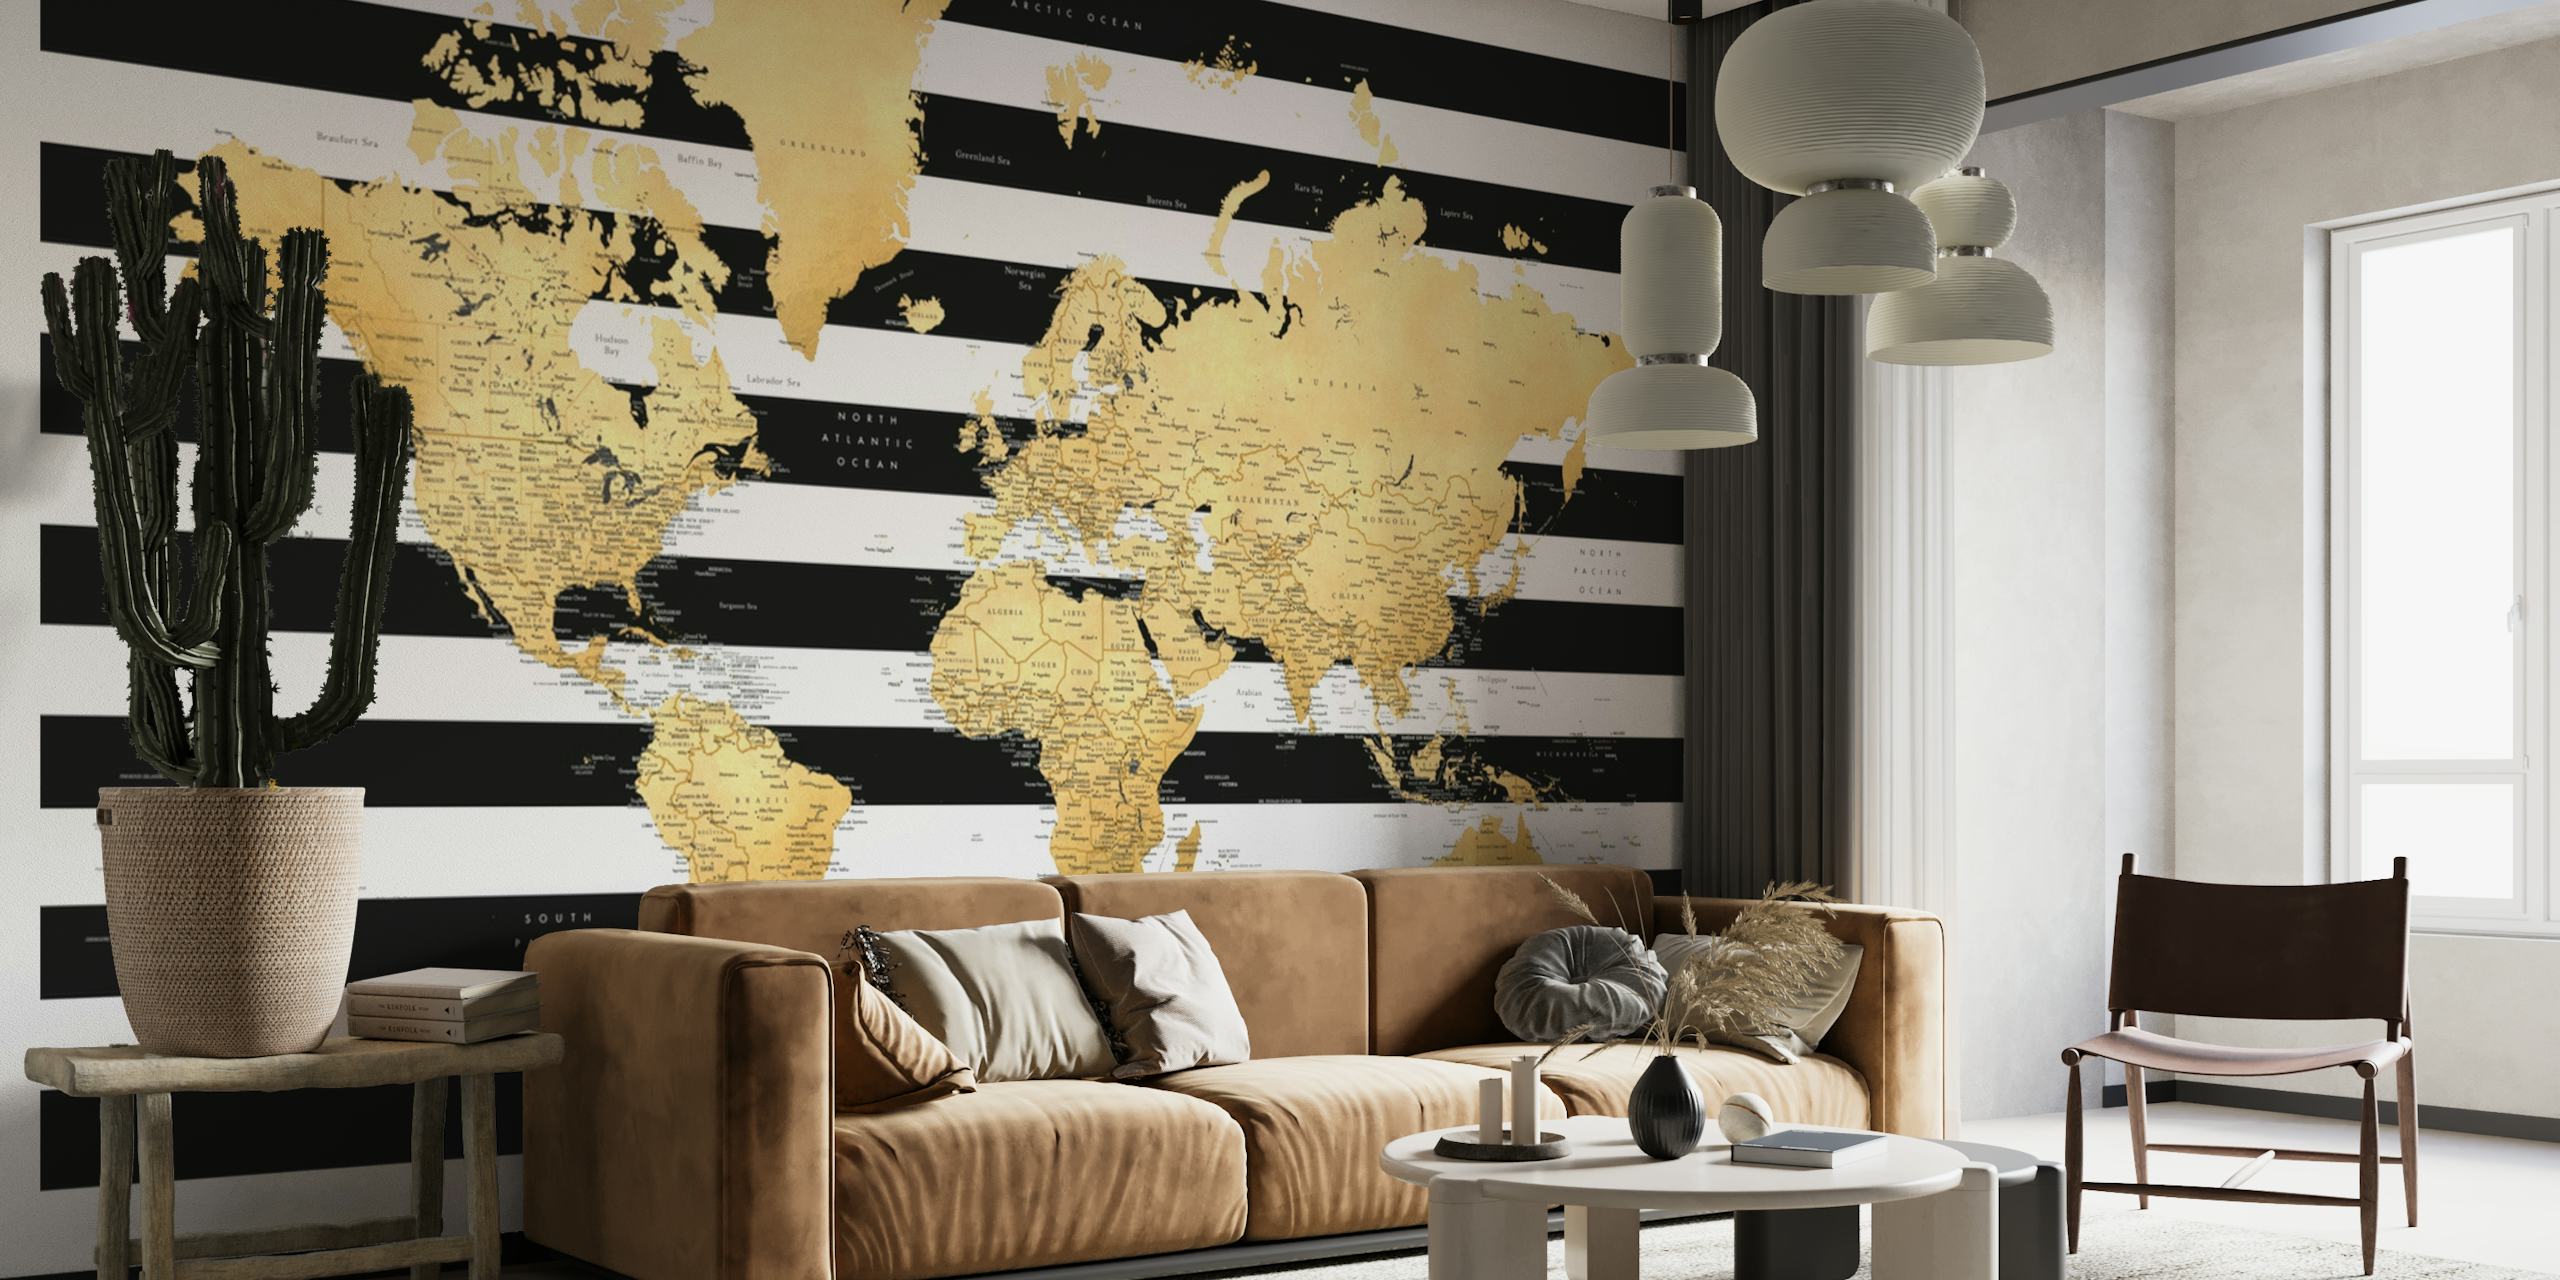 Detailed world map Harper papel pintado